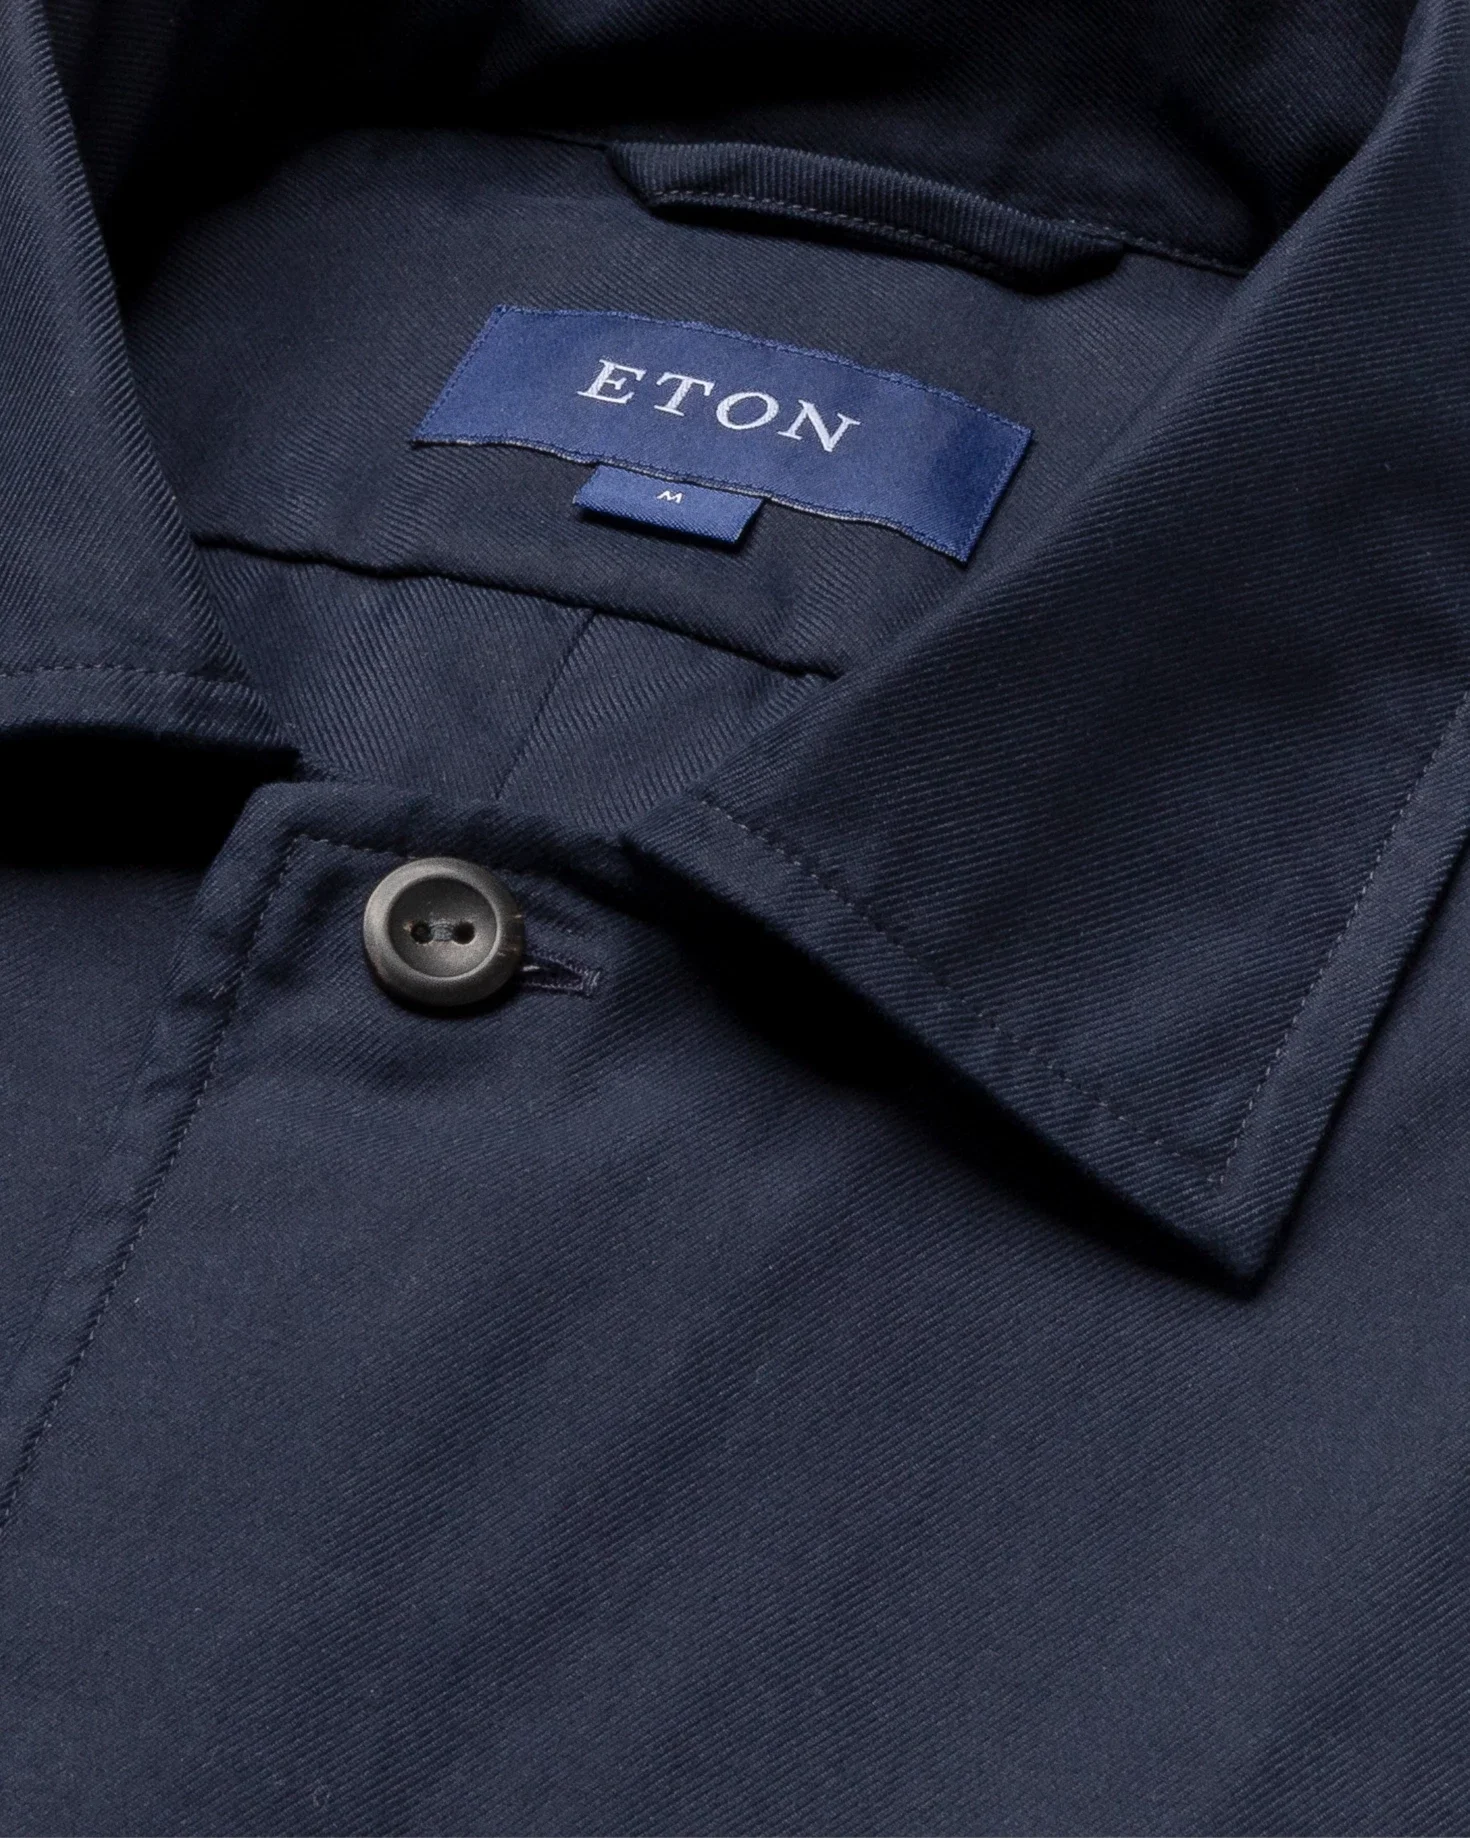 Eton - dark navy 3 pocket overshirt